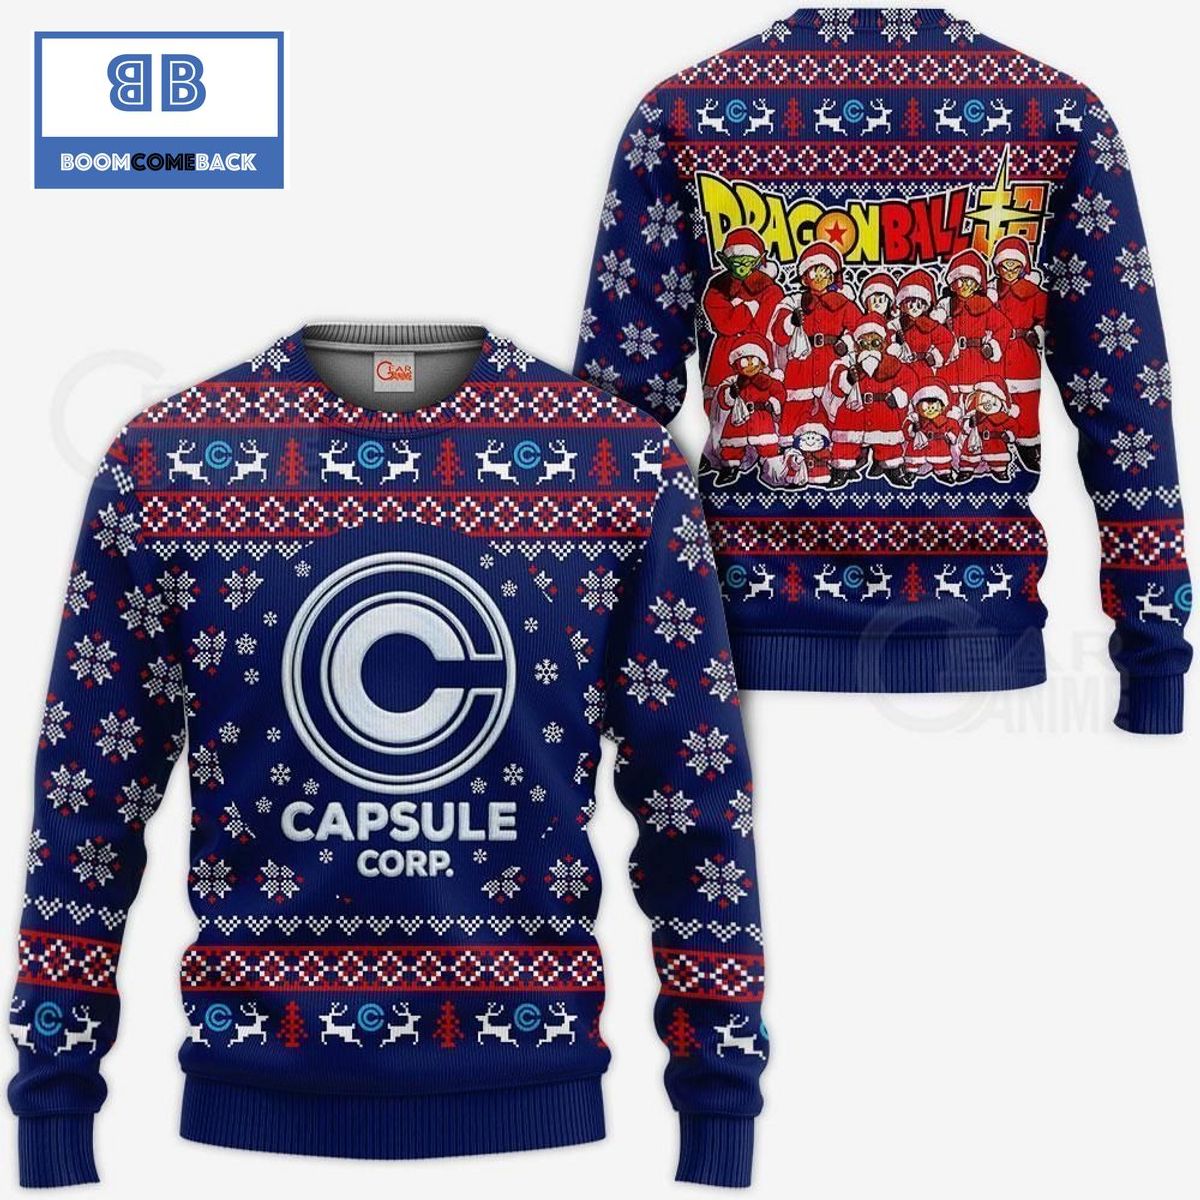 Capsule Satan Claus Dragon Ball Anime Ugly Christmas Sweater